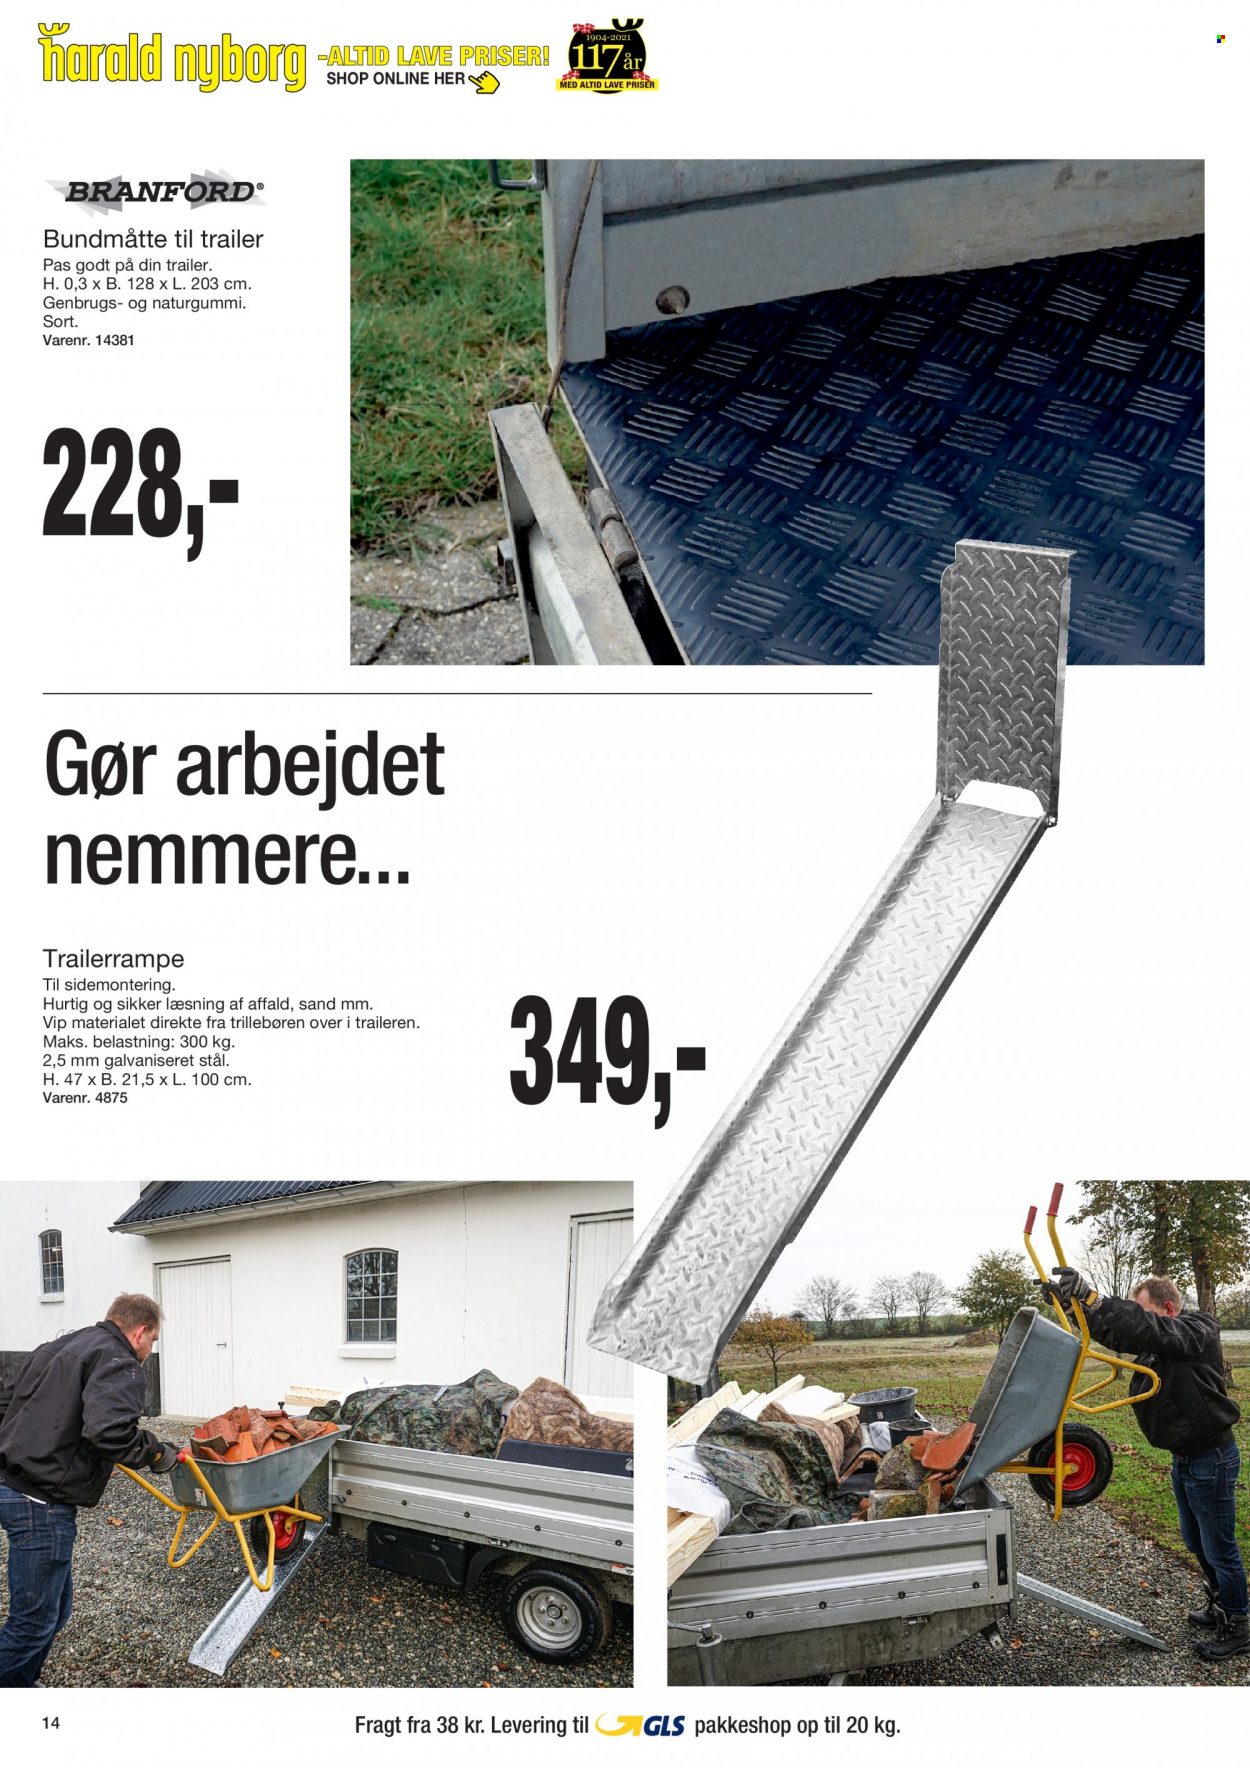 Harald Nyborg tilbudsavis  - 07.10.2021 - 13.10.2021. Side 14.